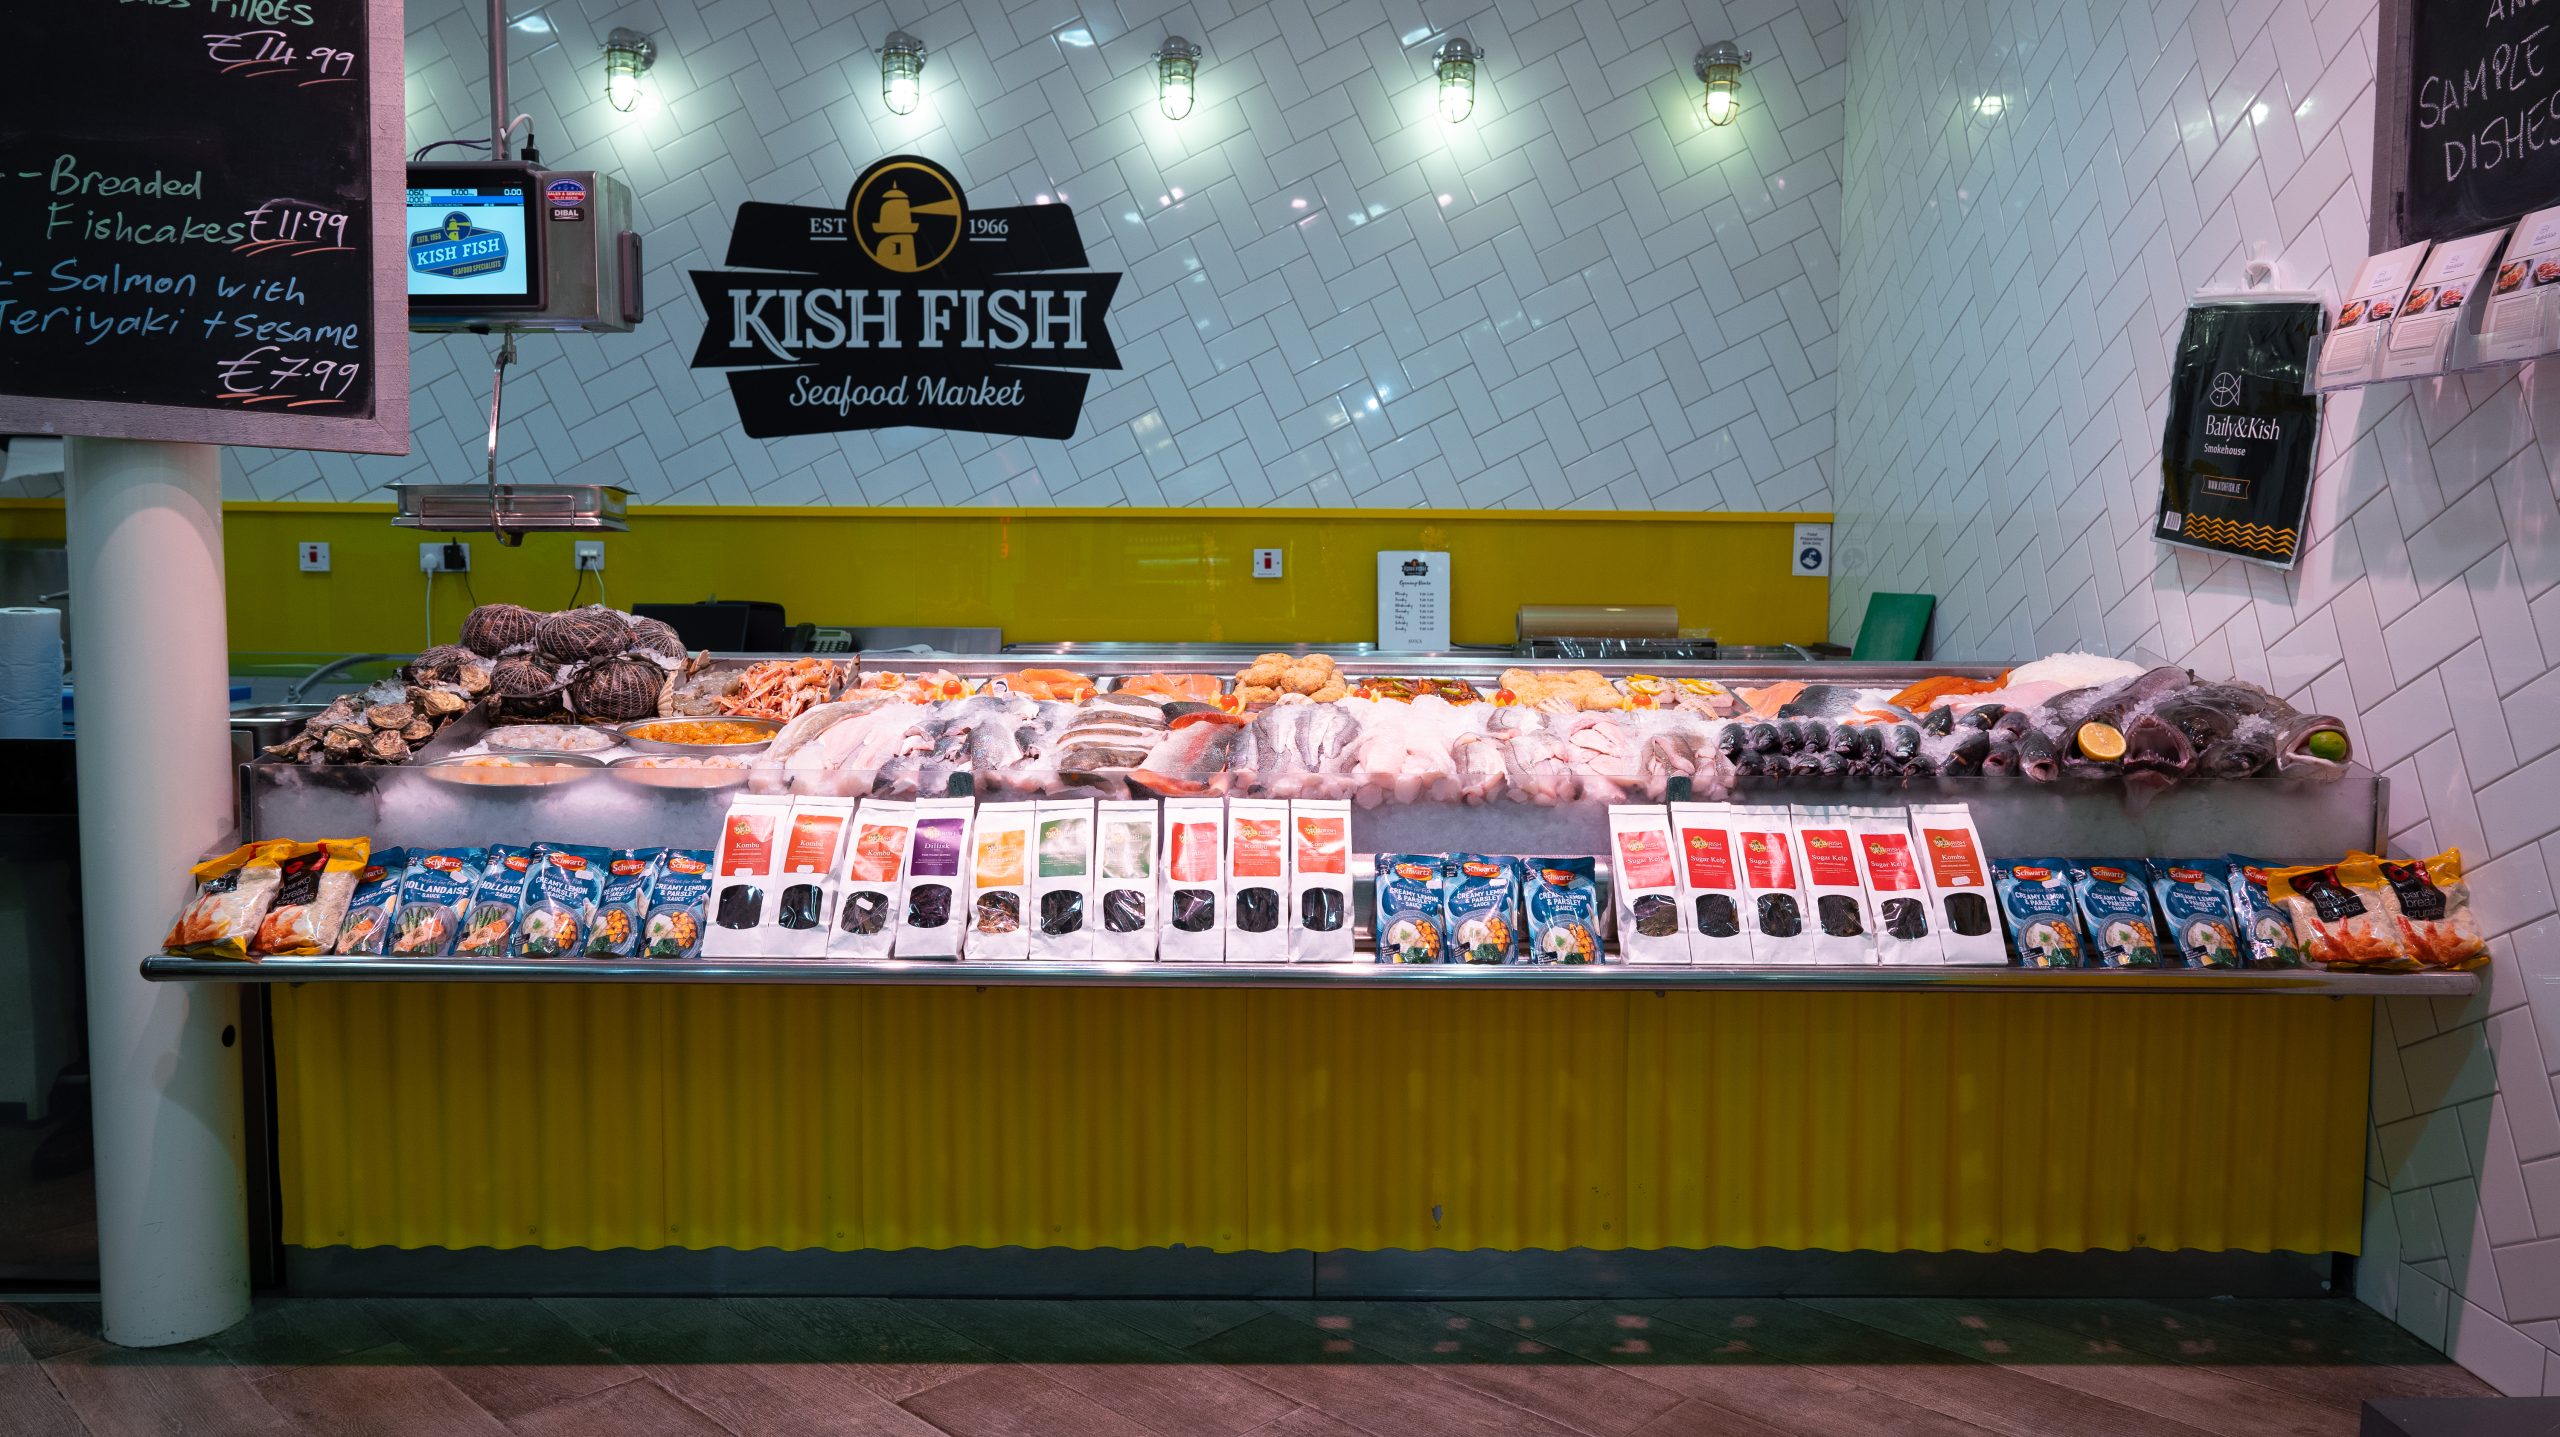 A selection of fresh fish at Kish Fish